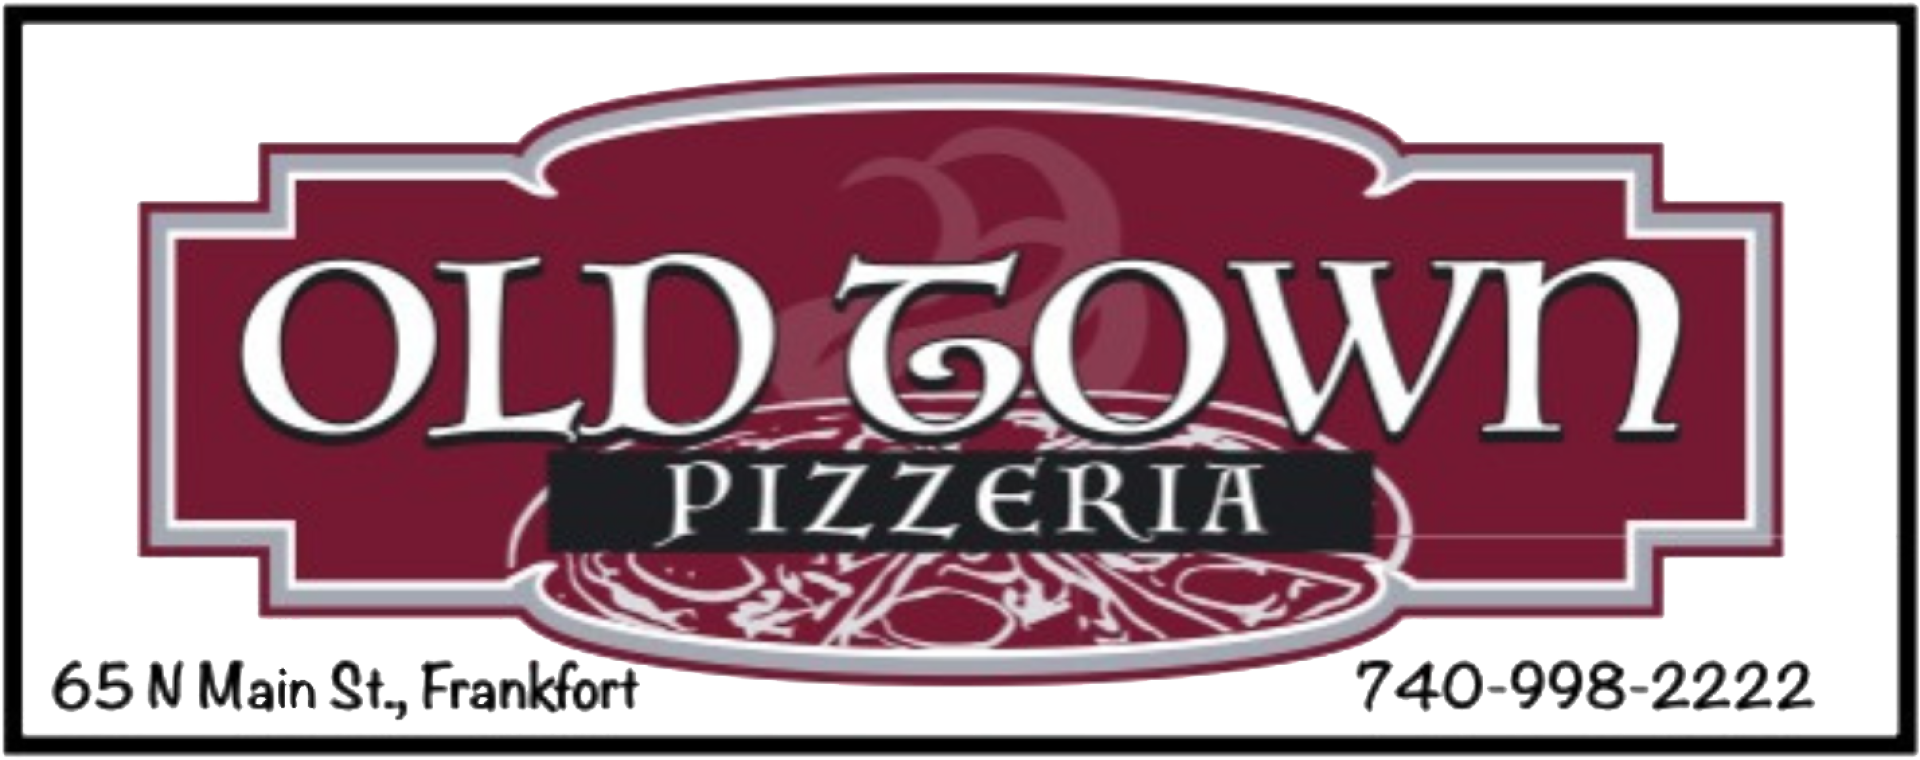 old town pizzeria logo